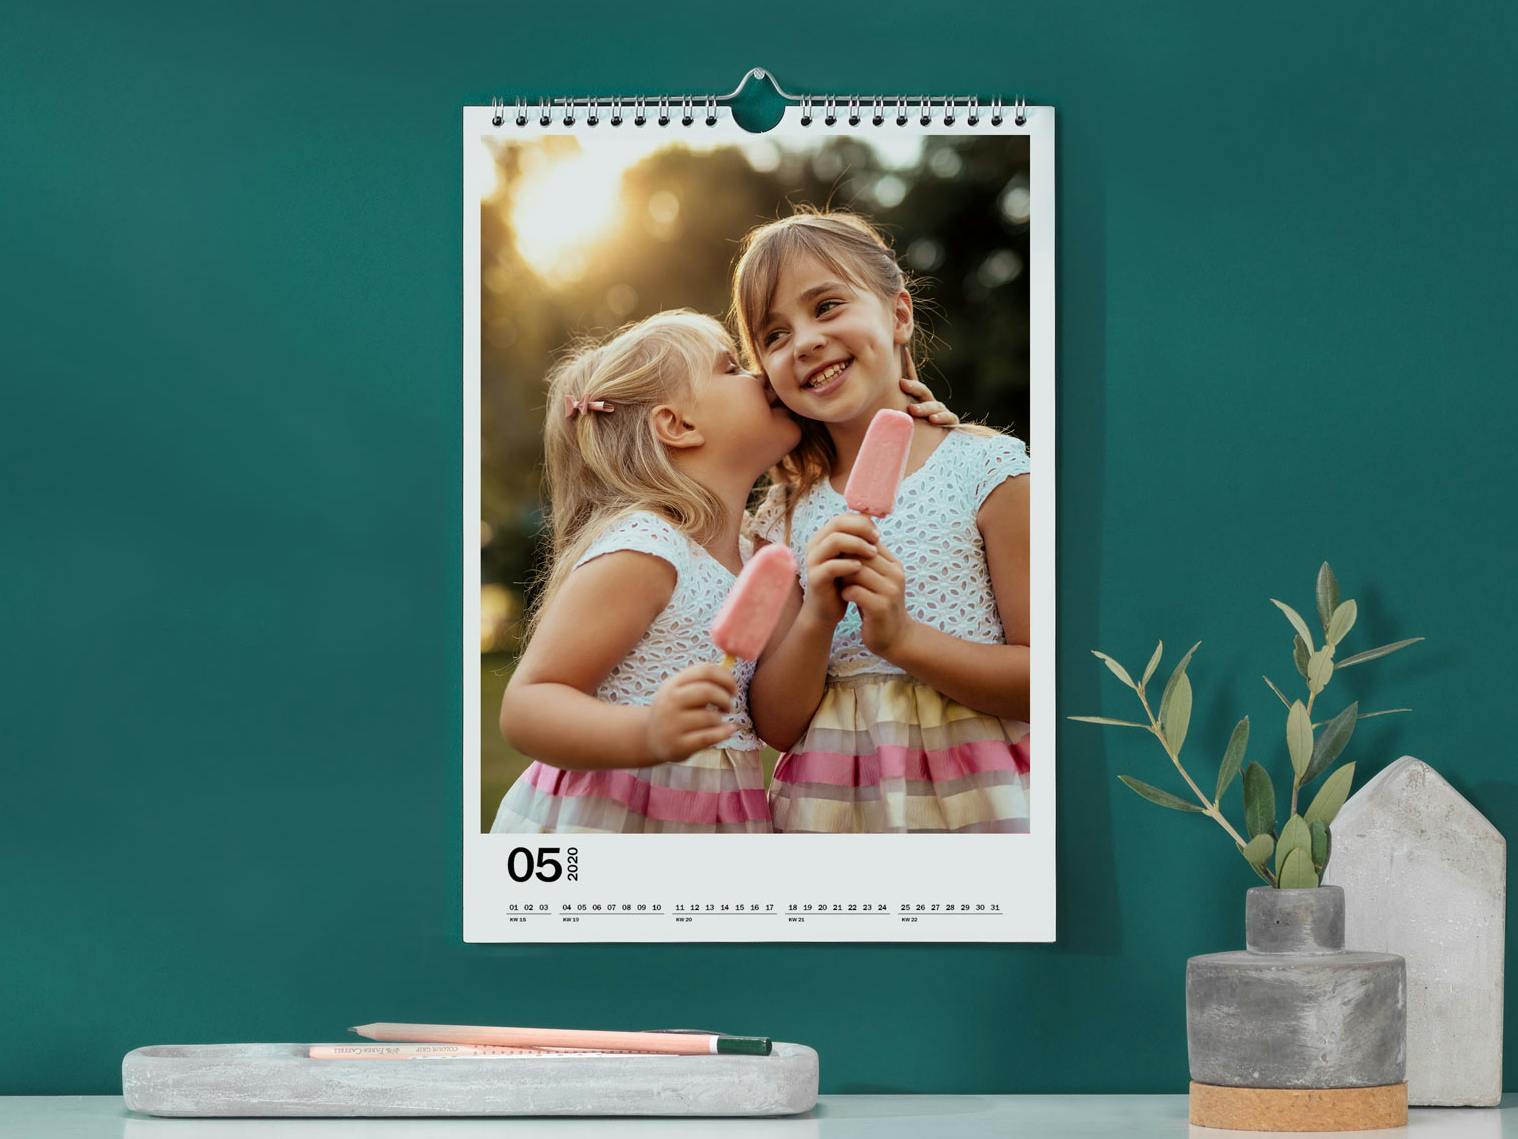 Fotokalender in staand formaat met een foto van twee kleine meisjes die ijs eten